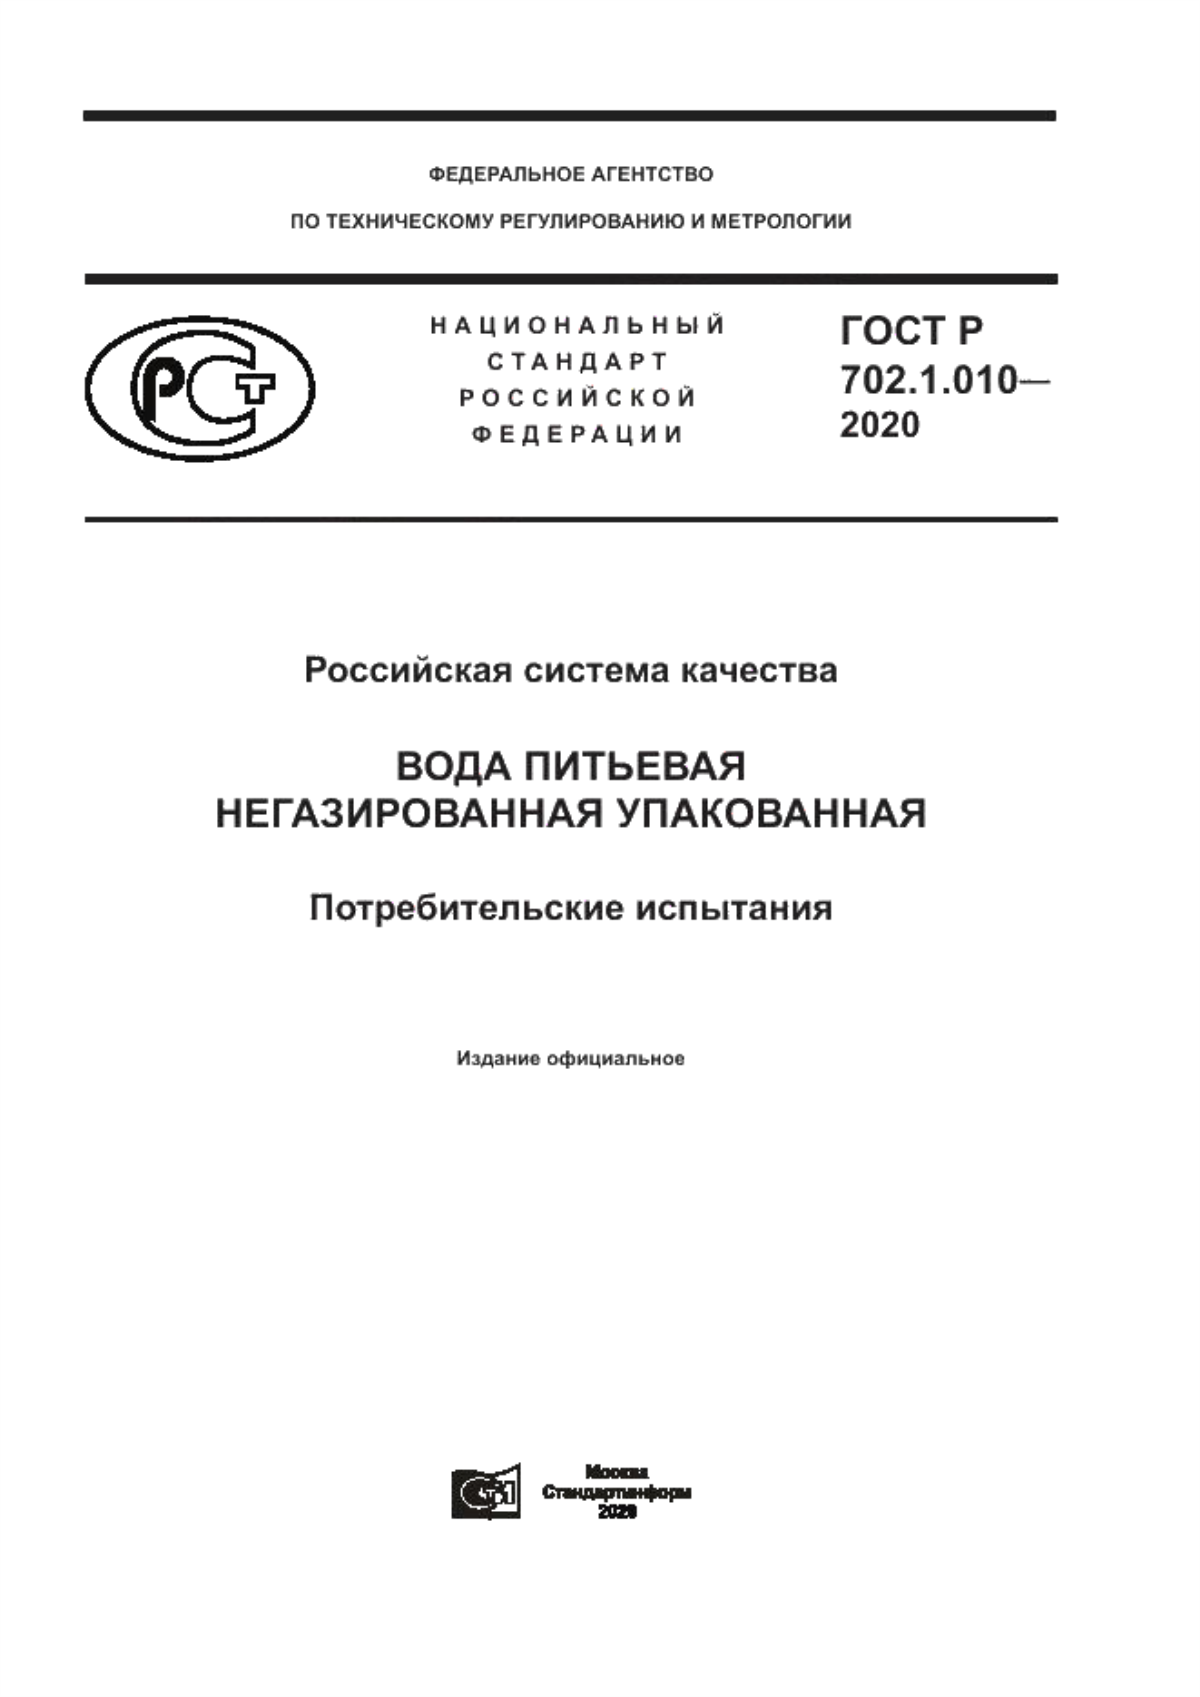 ГОСТ Р 702.1.010-2020 Российская система качества. Вода питьевая негазированная упакованная. Потребительские испытания